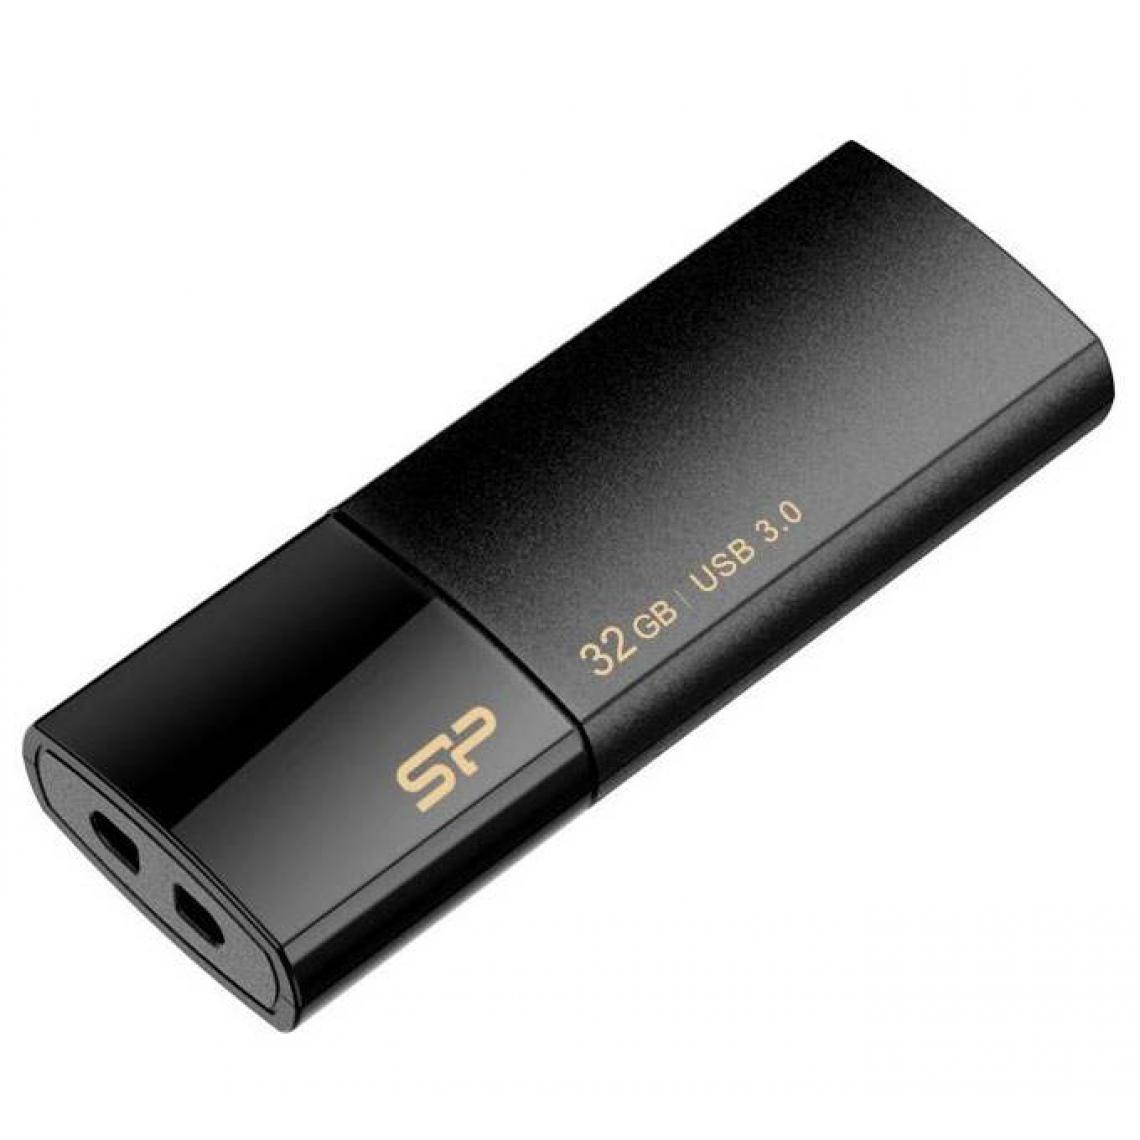 Silicon power - Blaze B05 32 Go USB 3.0 - Clés USB